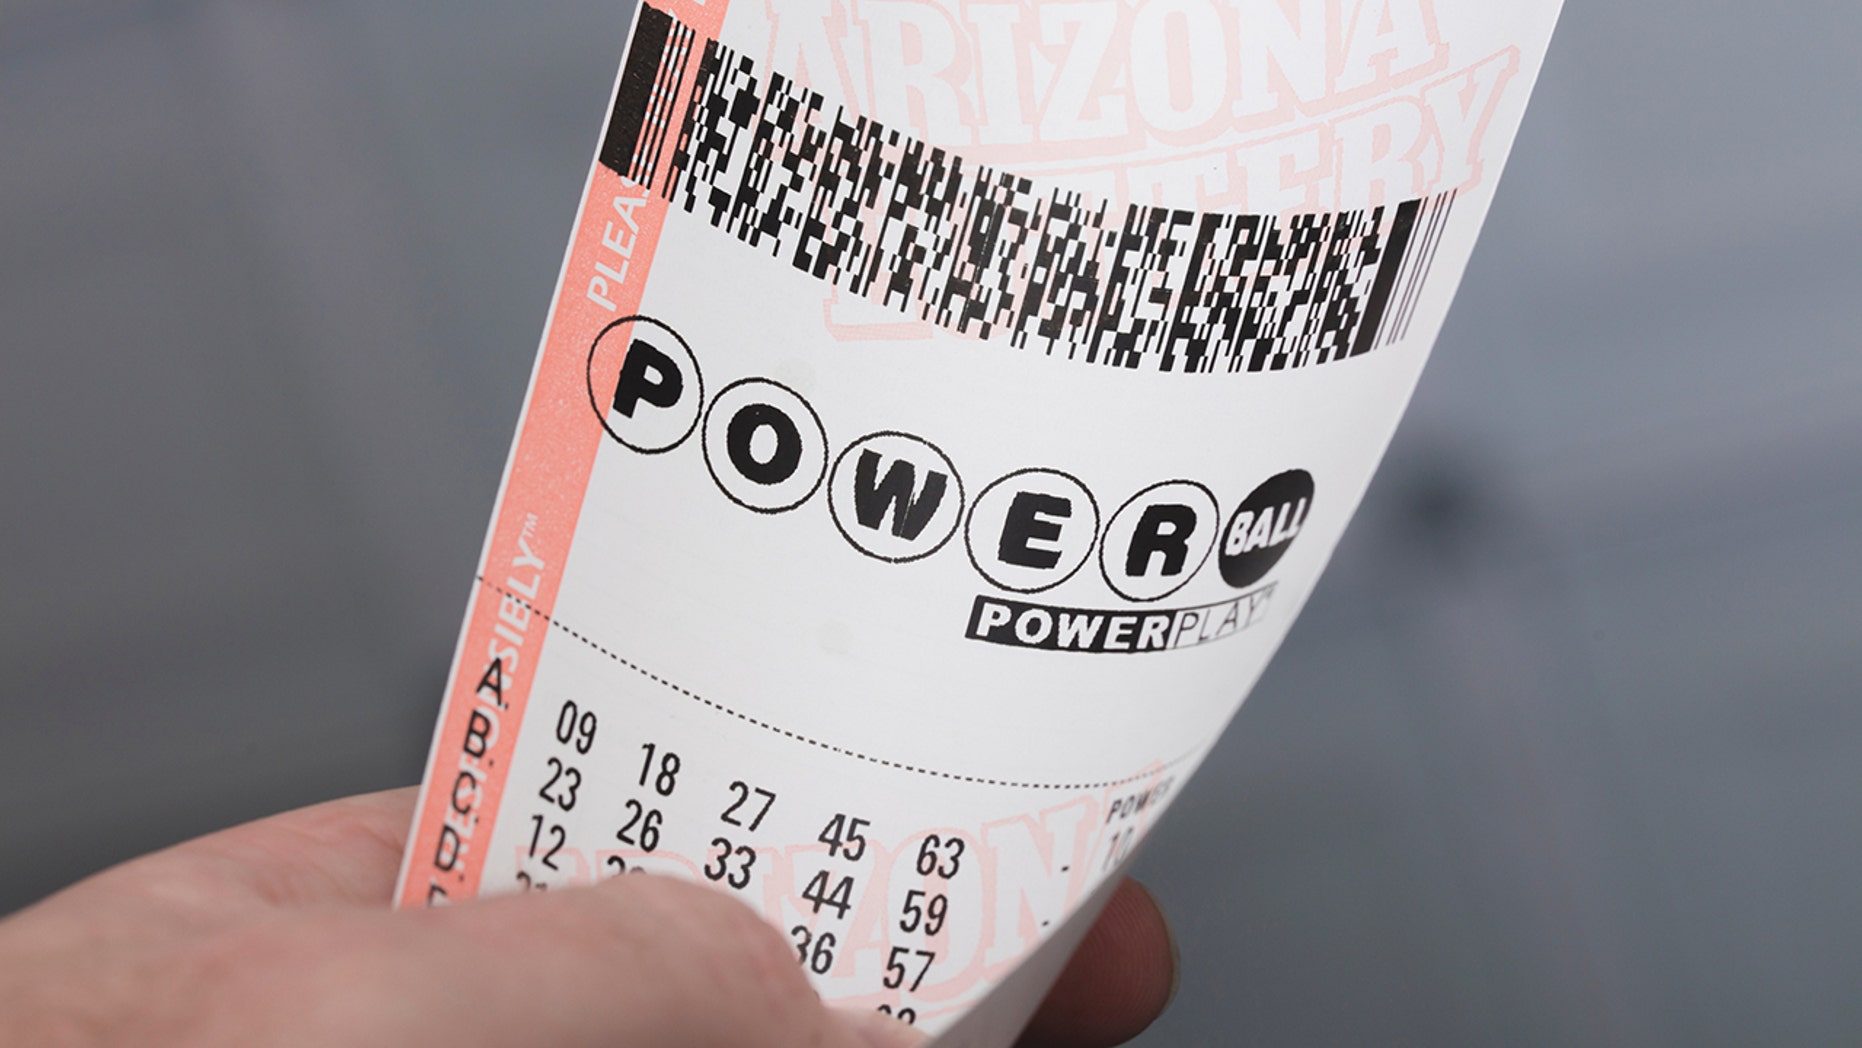 Kingman, USA - January 20, 2016: A photo of a man holding a Powerball Lottery ticket in Kingman, Arizona.